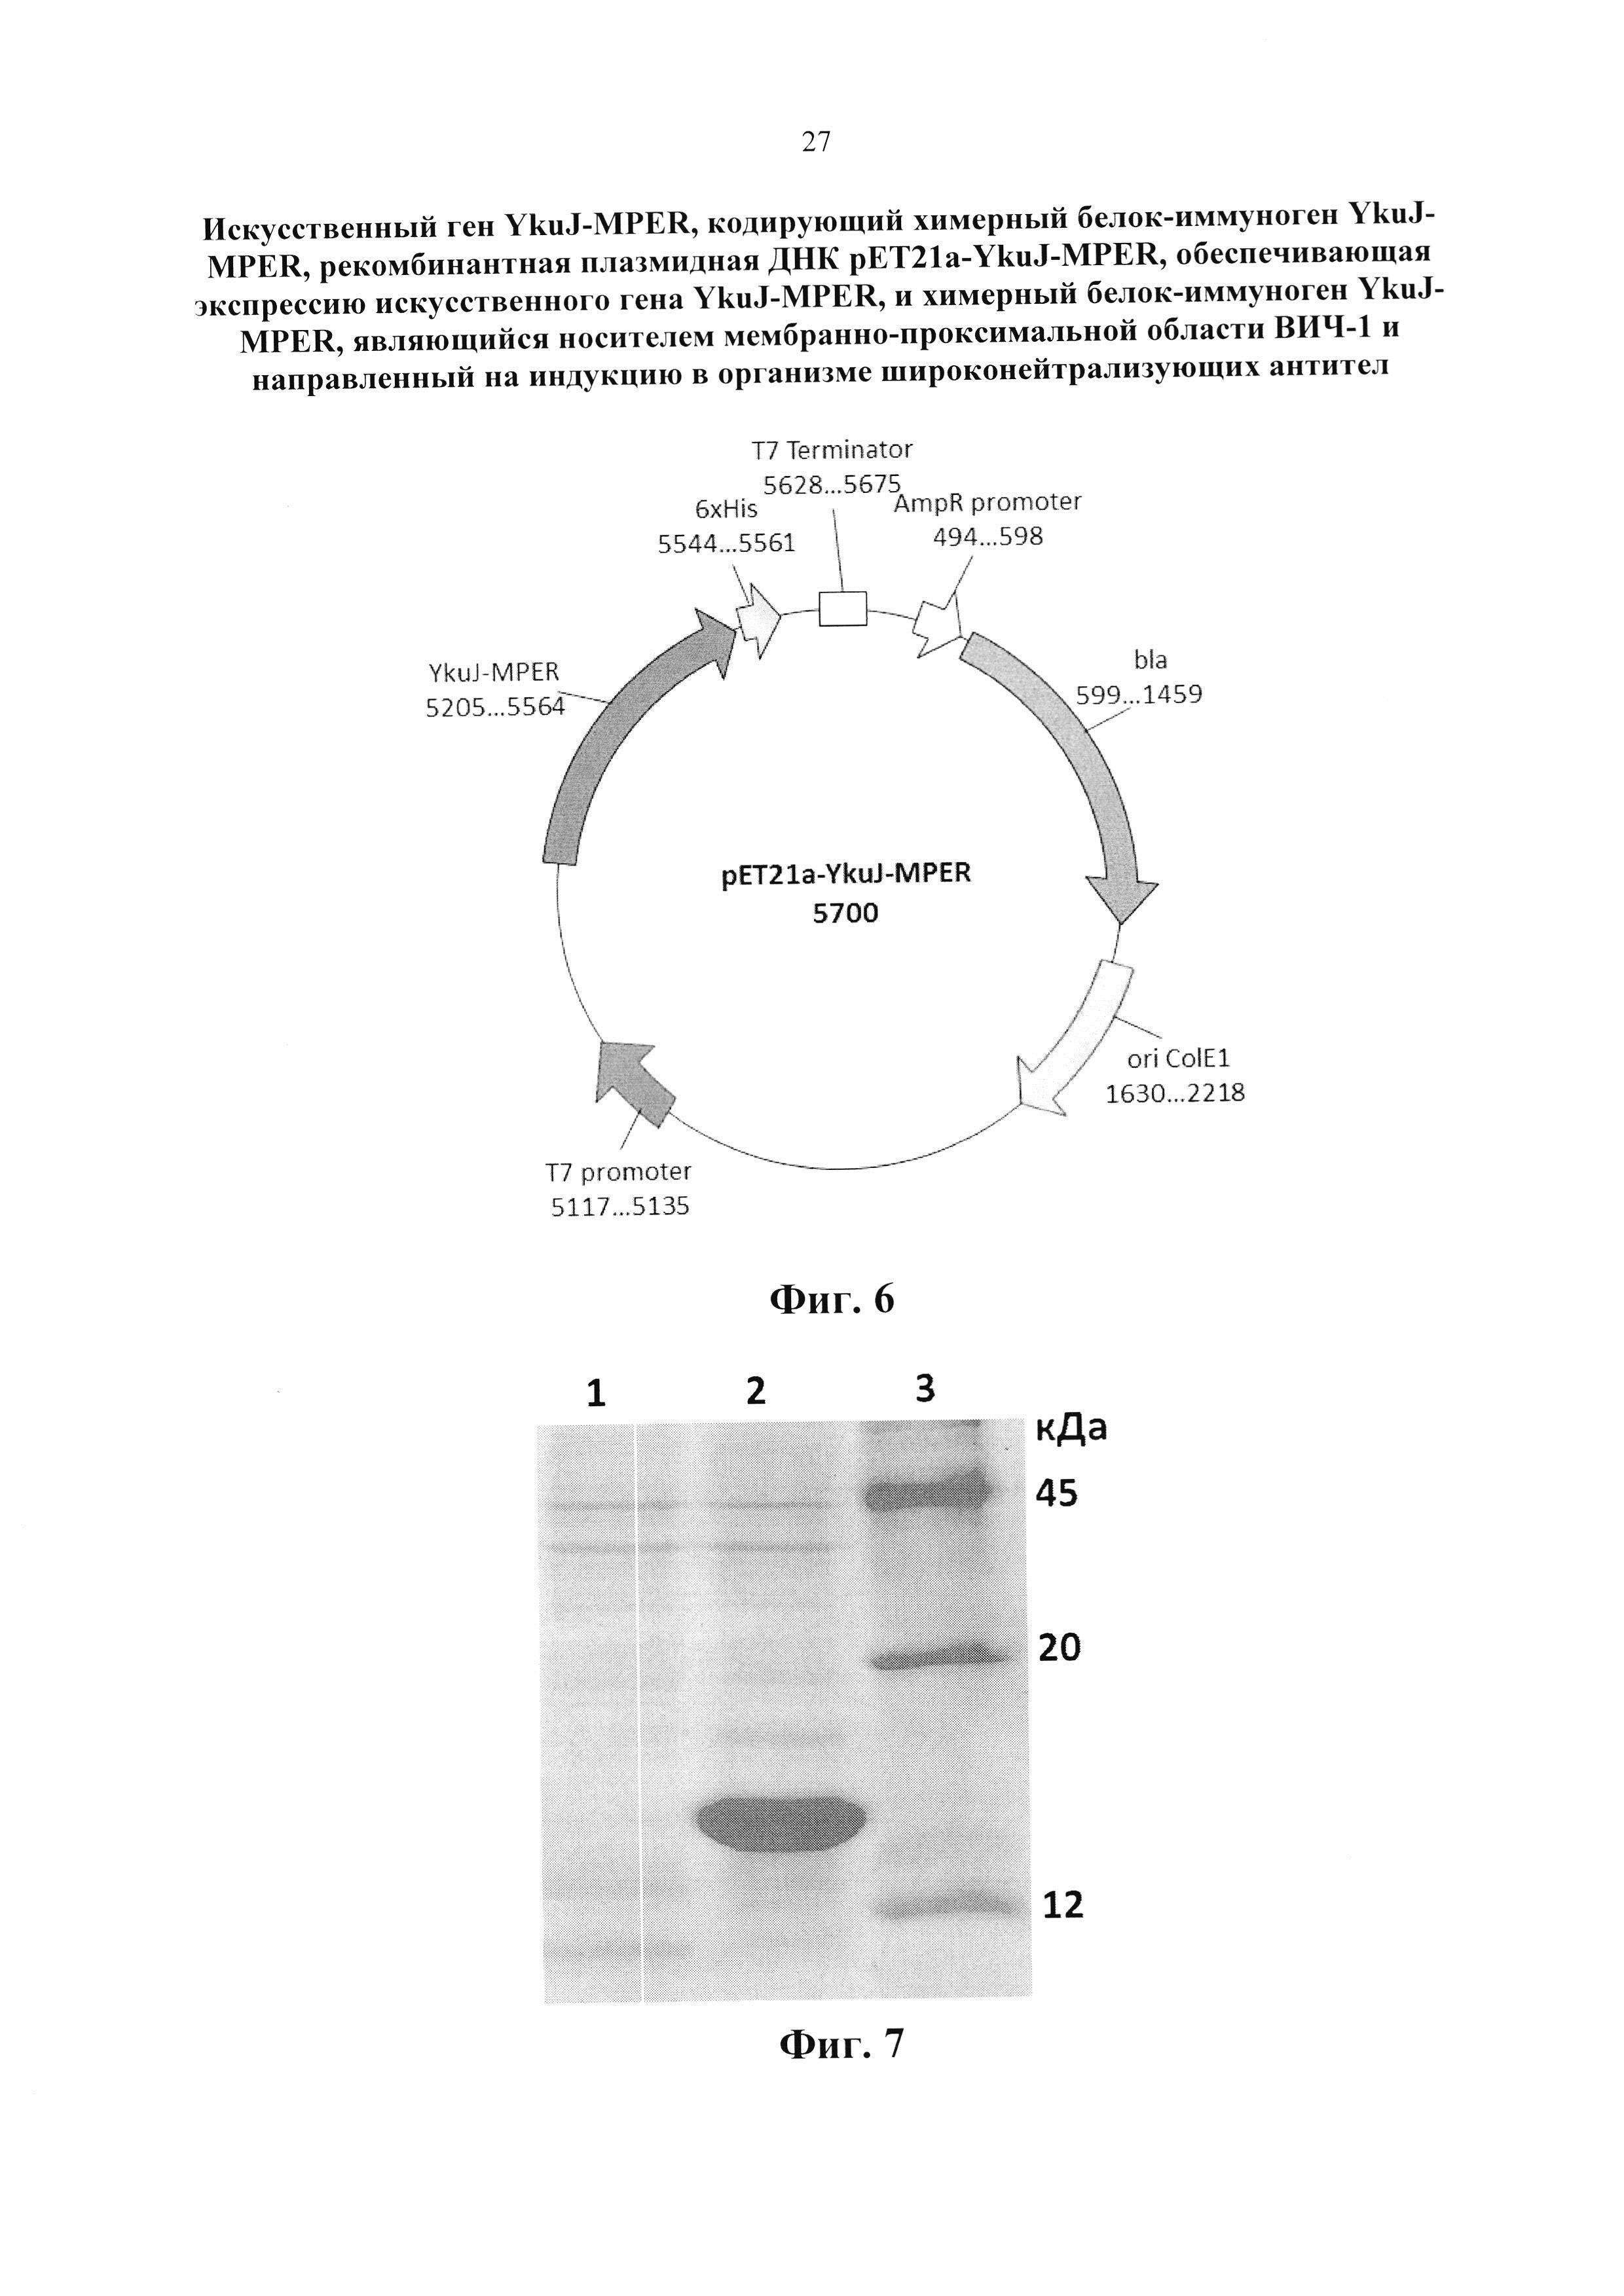 Искусственный ген YkuJ-MPER, кодирующий химерный белок-иммуноген YkuJ-MPER, рекомбинантная плазмидная ДНК pET21a-YkuJ-MPER, обеспечивающая экспрессию искусственного гена YkuJ-MPER, и химерный белок-иммуноген YkuJ-MPER, являющийся носителем мембранно-проксимальной области ВИЧ-1 и направленный на индукцию в организме широконейтрализующих антител